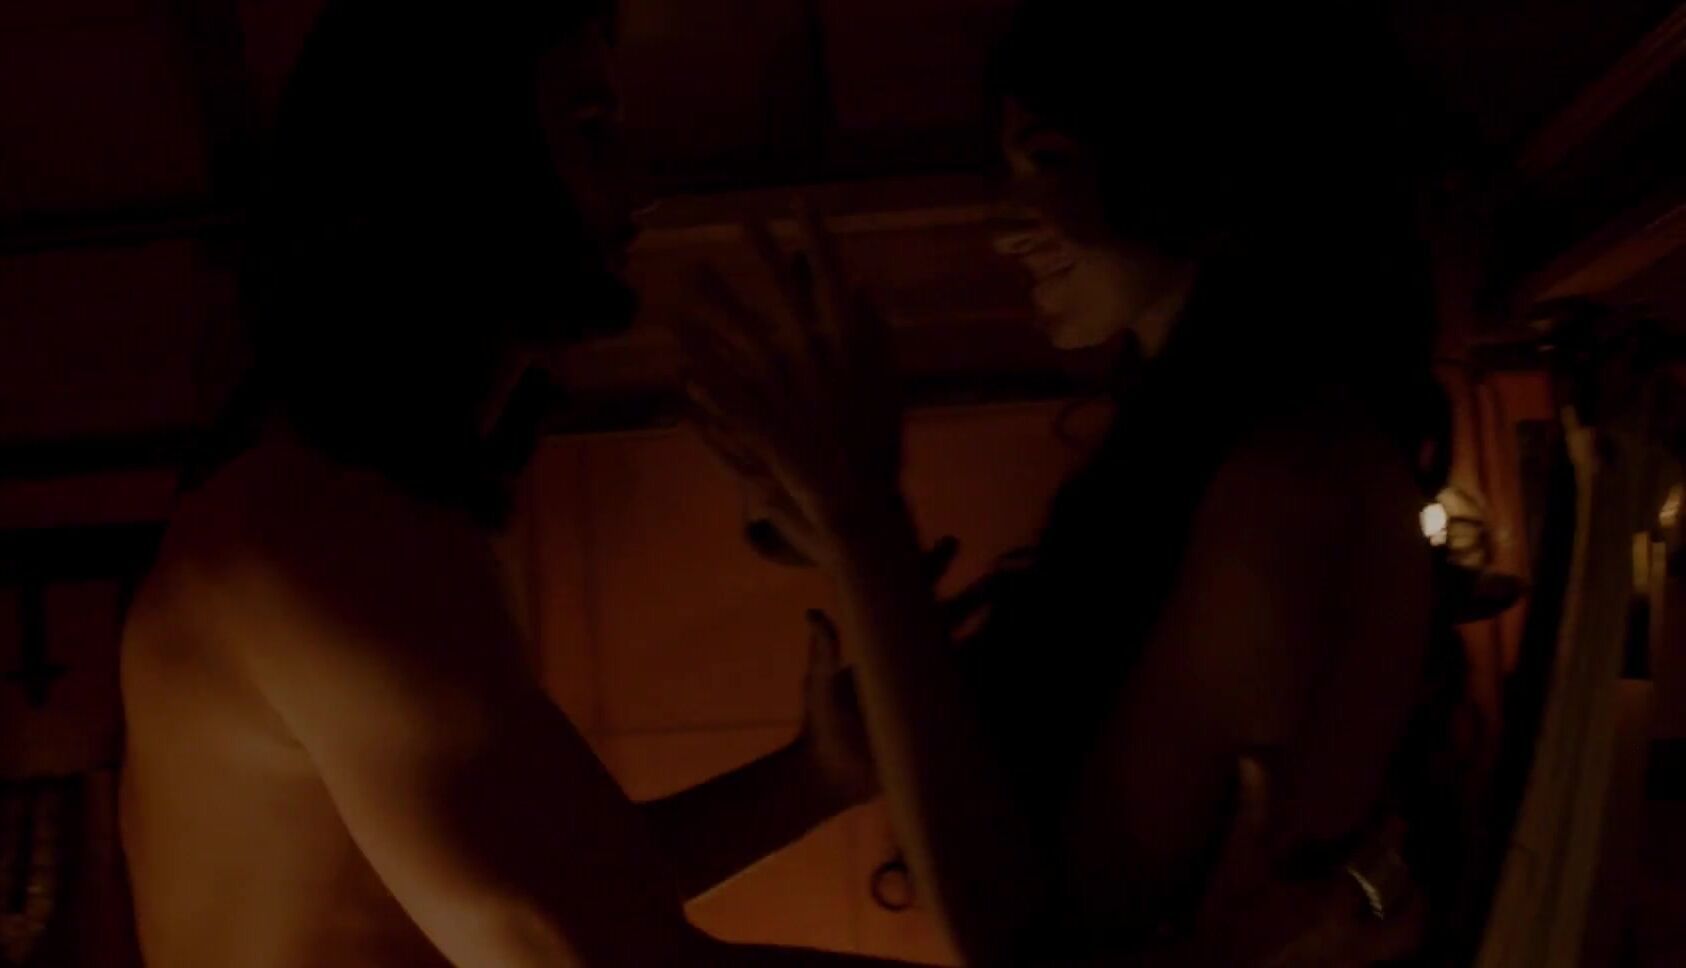 Masturbando Man bonks Mădălina Diana Ghenea nude knowing she wants sex in Borgia S03e03-04 (2015) TorrentZ